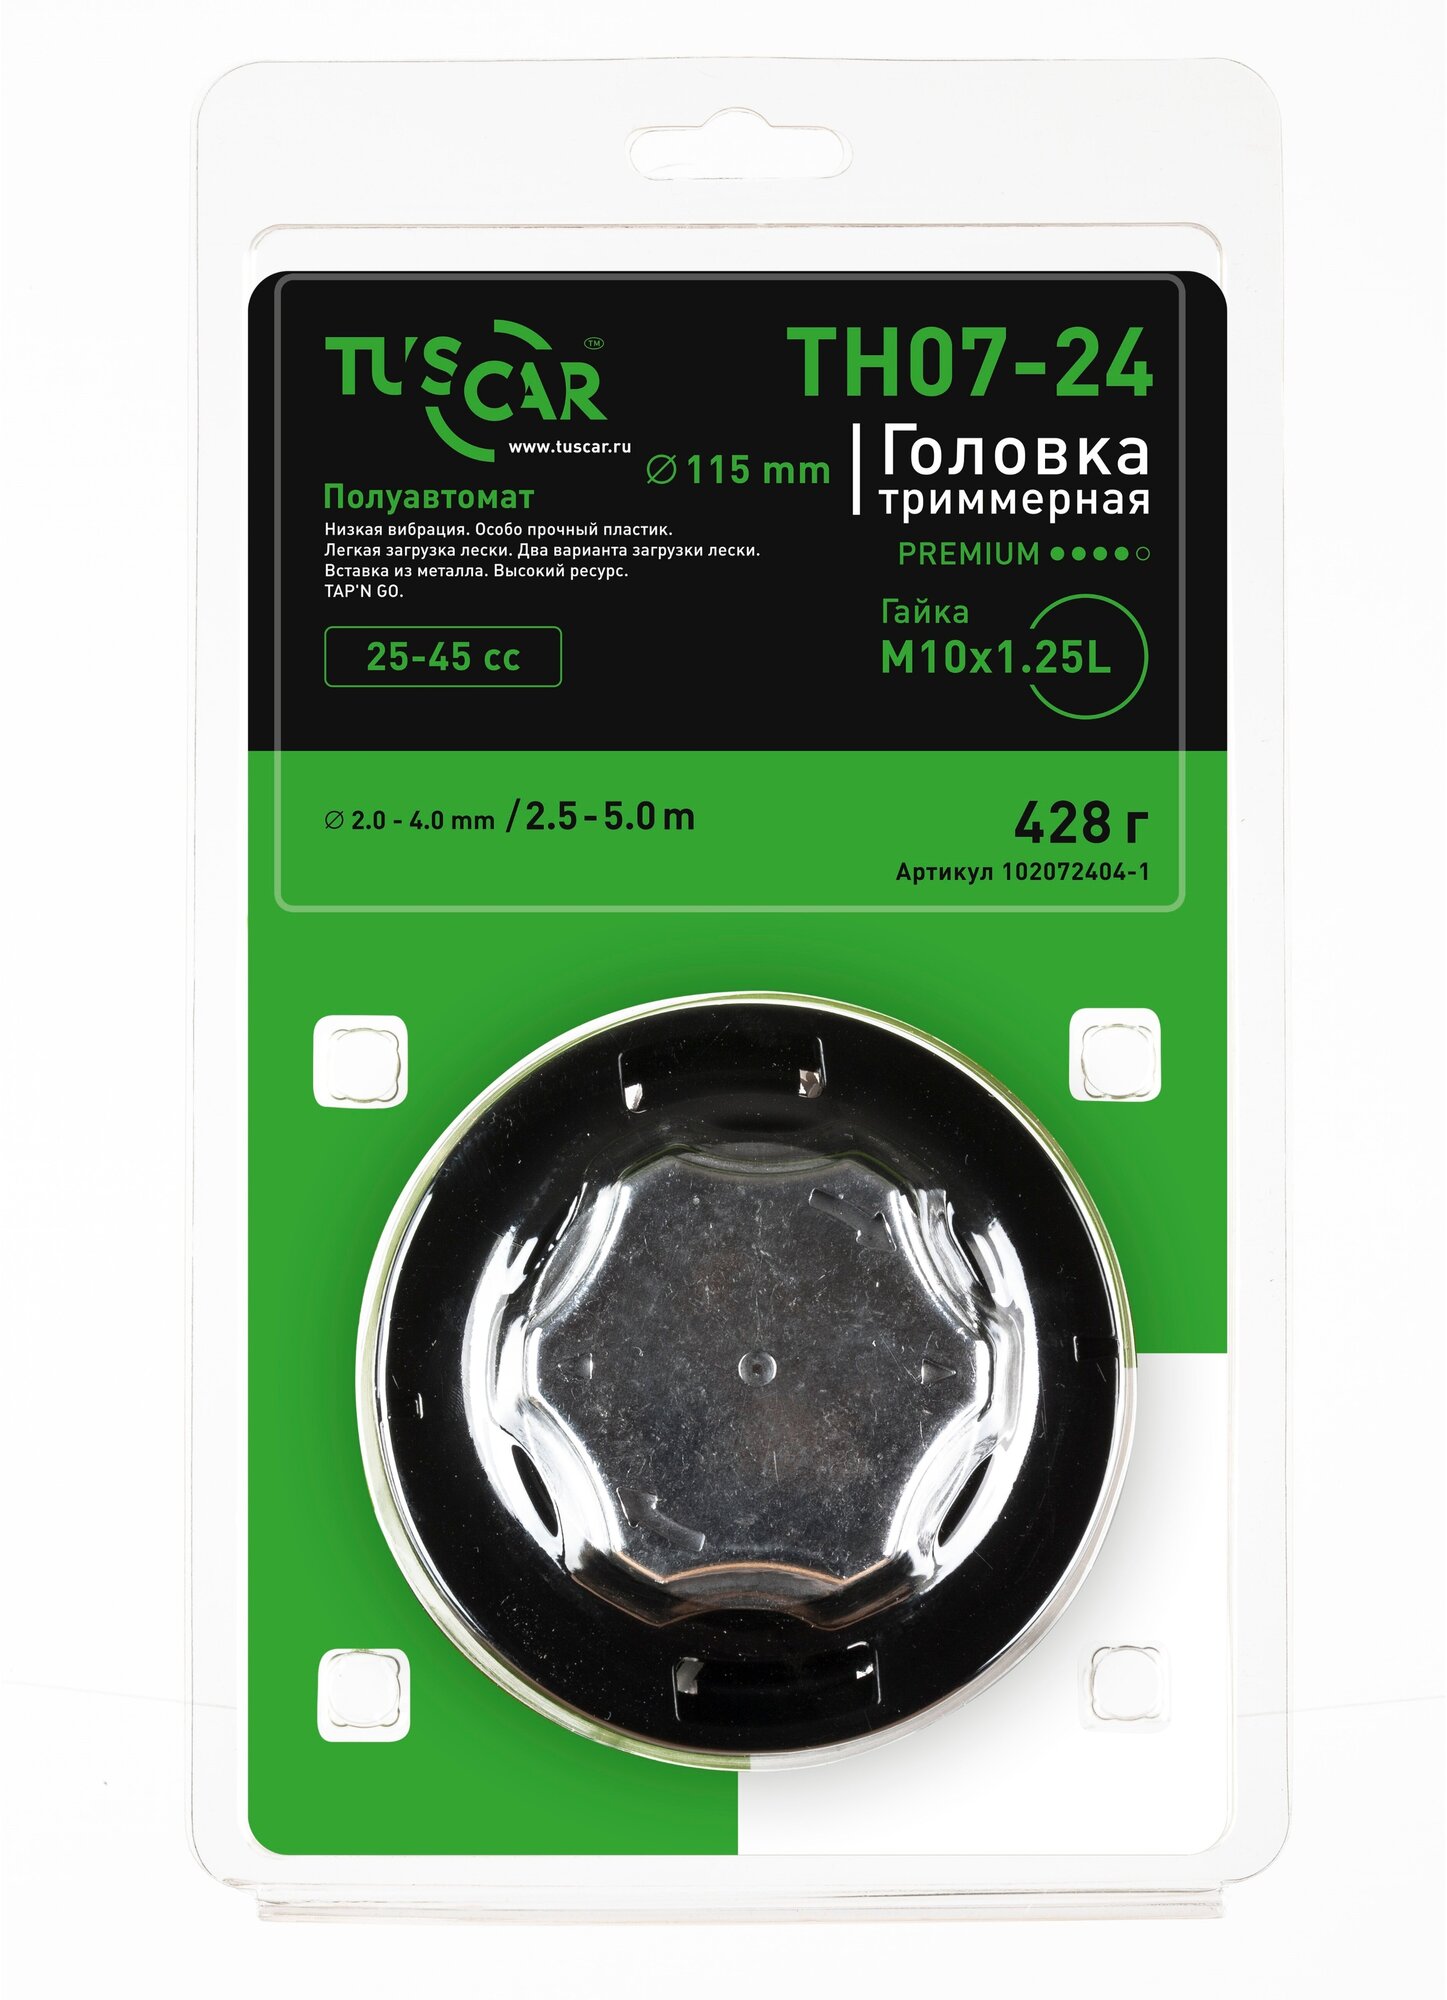 Головка триммерная TUSCAR TH07-24, Premium, гайка M10*1,25L